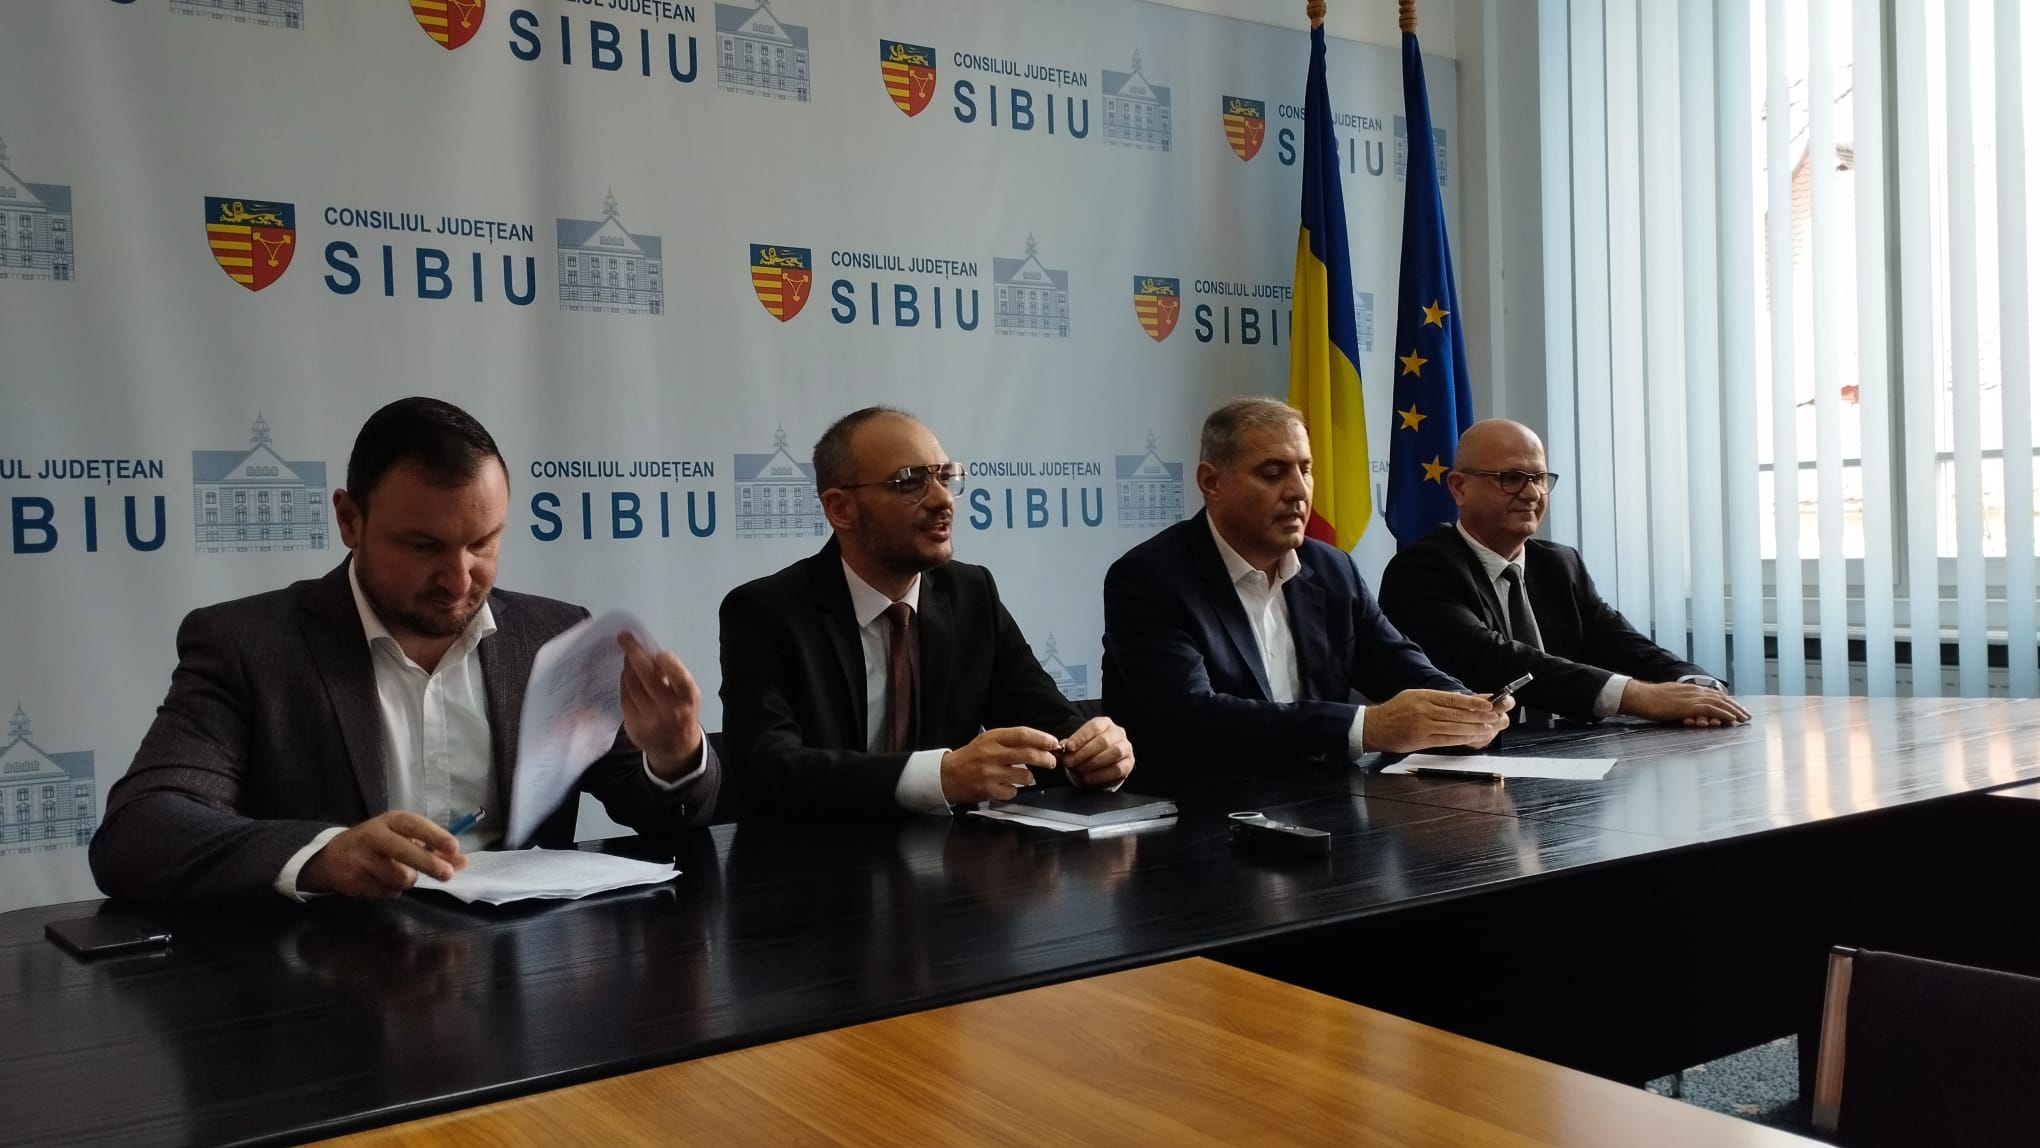 Înființat cu fonduri europene, Sibiu Business Agency rămâne activ în cadrul CJ, dar încă nu are angajați. „Pregătim fișa postului”